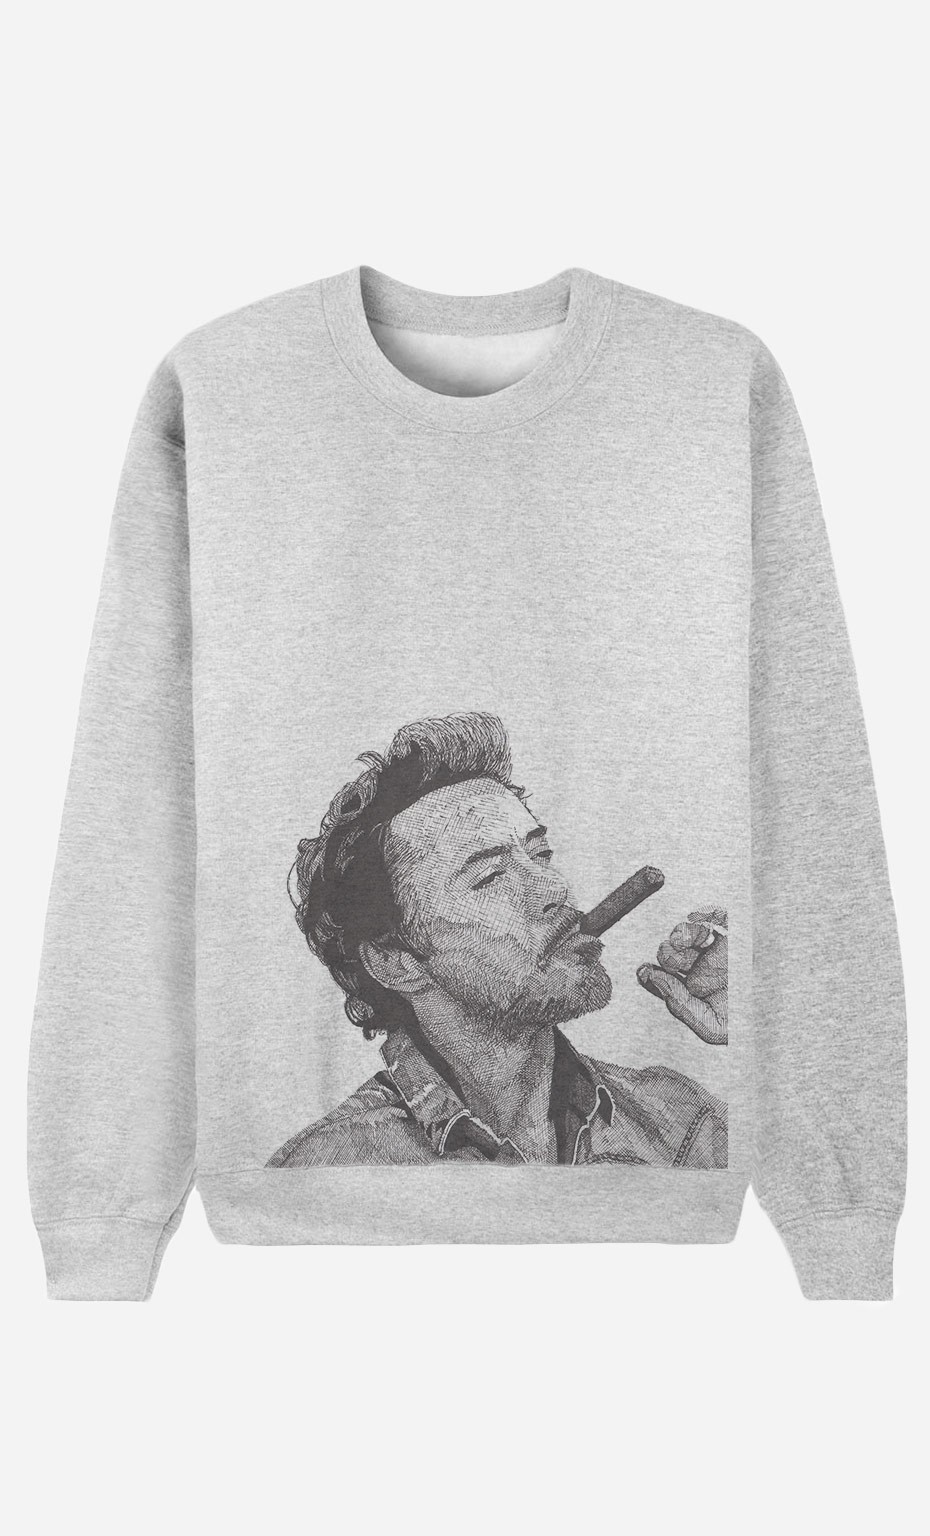 Sweatshirt Robert Downey Jr